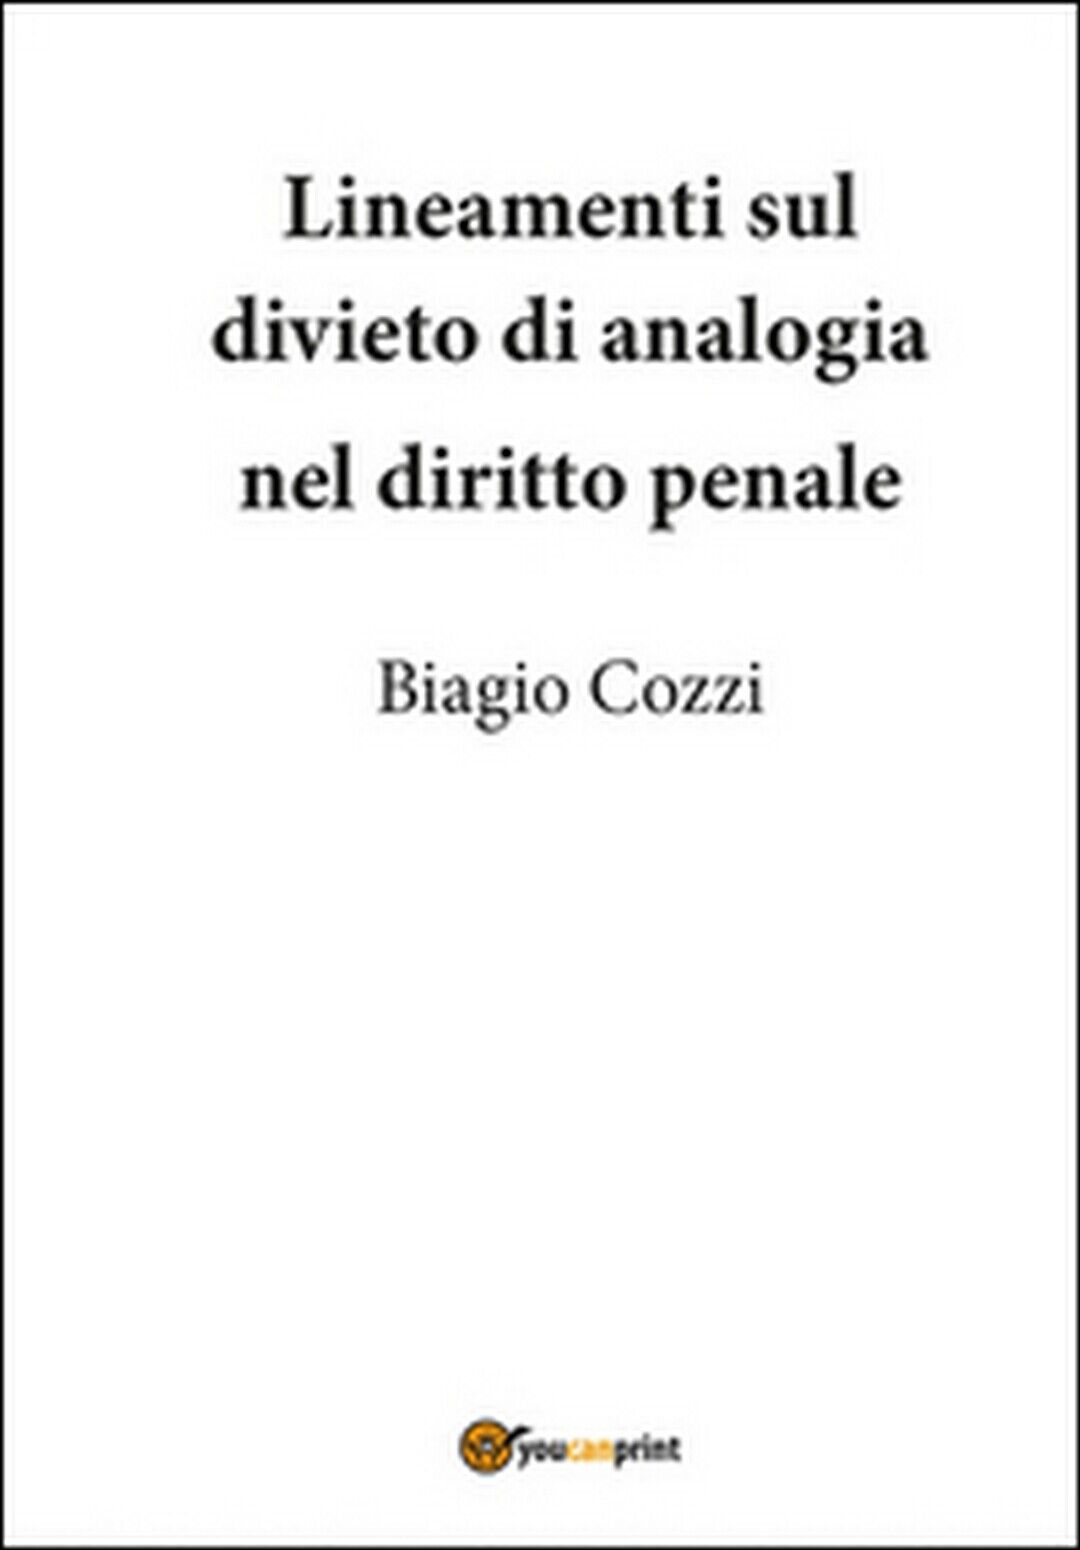 Lineamenti sul divieto di analogia nel diritto penale  di Biagio Cozzi,  2015 libro usato